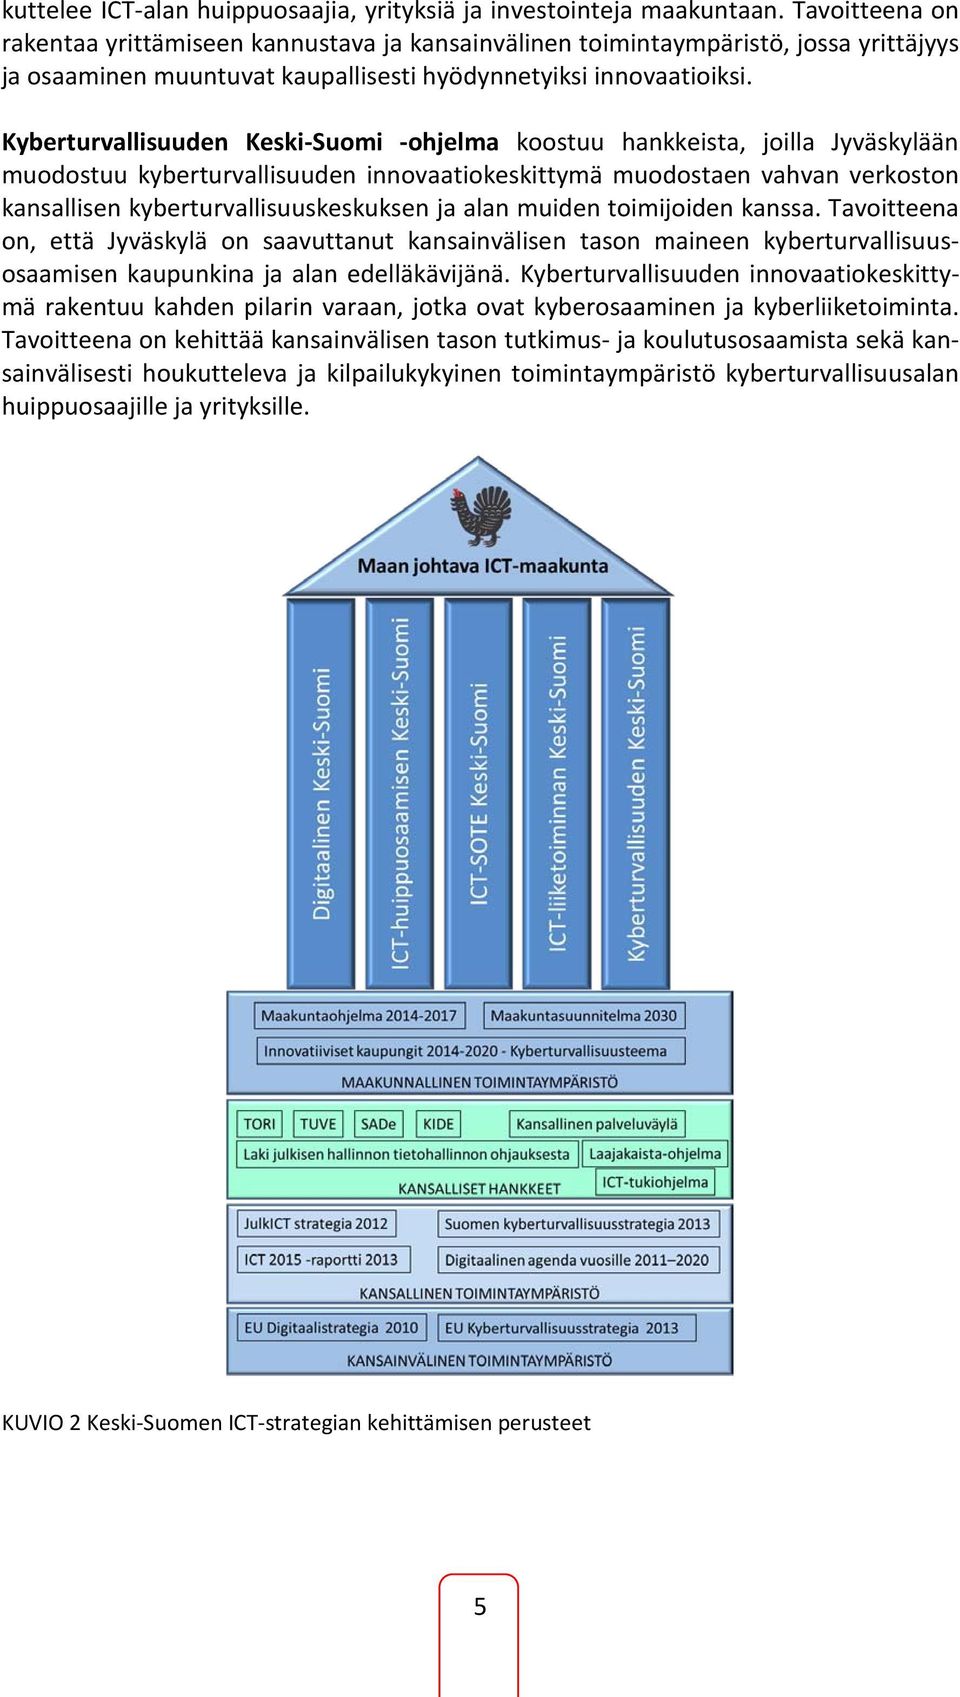 Kyberturvallisuuden Keski-Suomi -ohjelma koostuu hankkeista, joilla Jyväskylään muodostuu kyberturvallisuuden innovaatiokeskittymä muodostaen vahvan verkoston kansallisen kyberturvallisuuskeskuksen